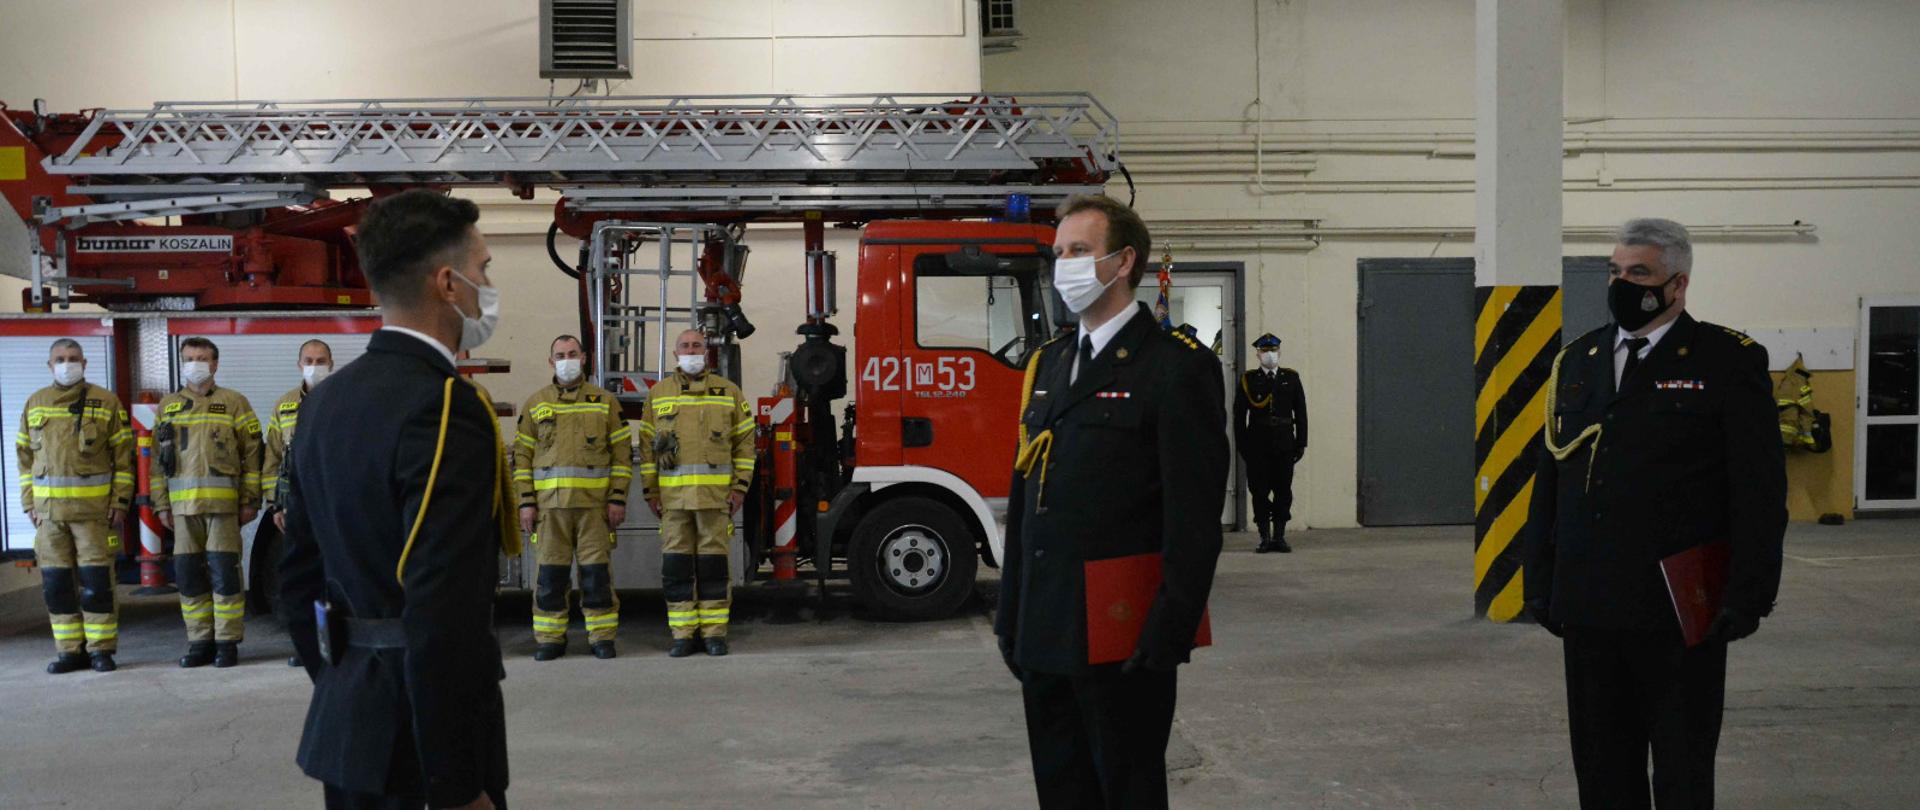 strażak składa meldunek przełożonemu. w tle strażacy w umundurowaniu bojowym i drabina pożarnicza. 